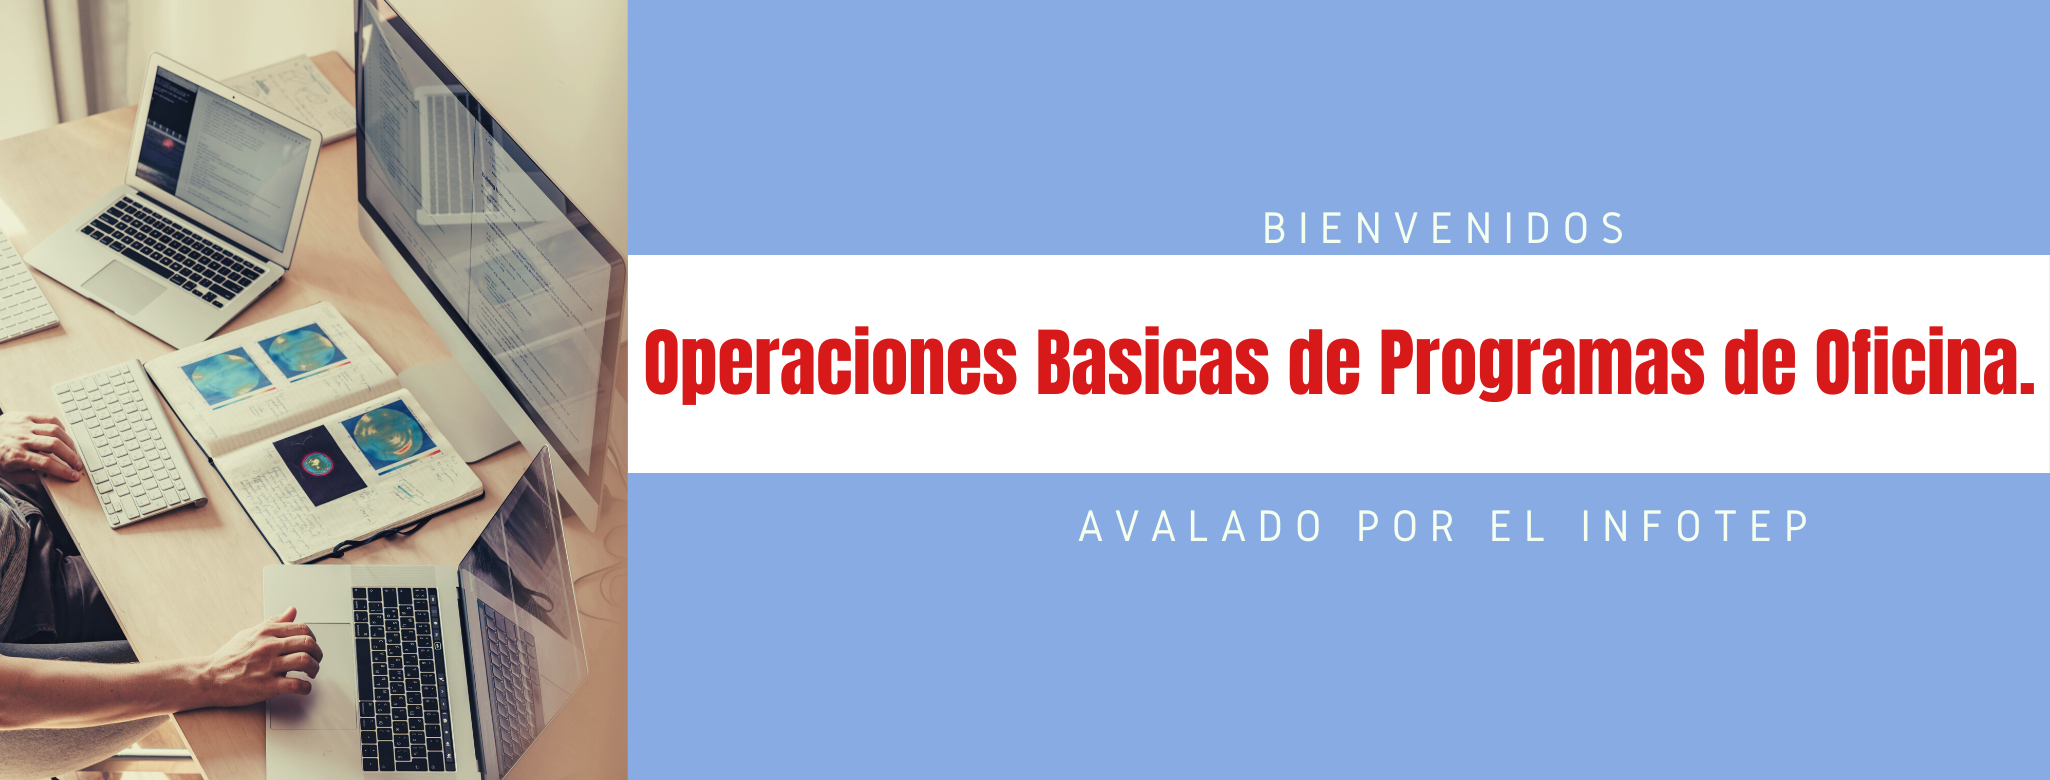 Operaciones Basicas de Programas de Oficina (3) (L)